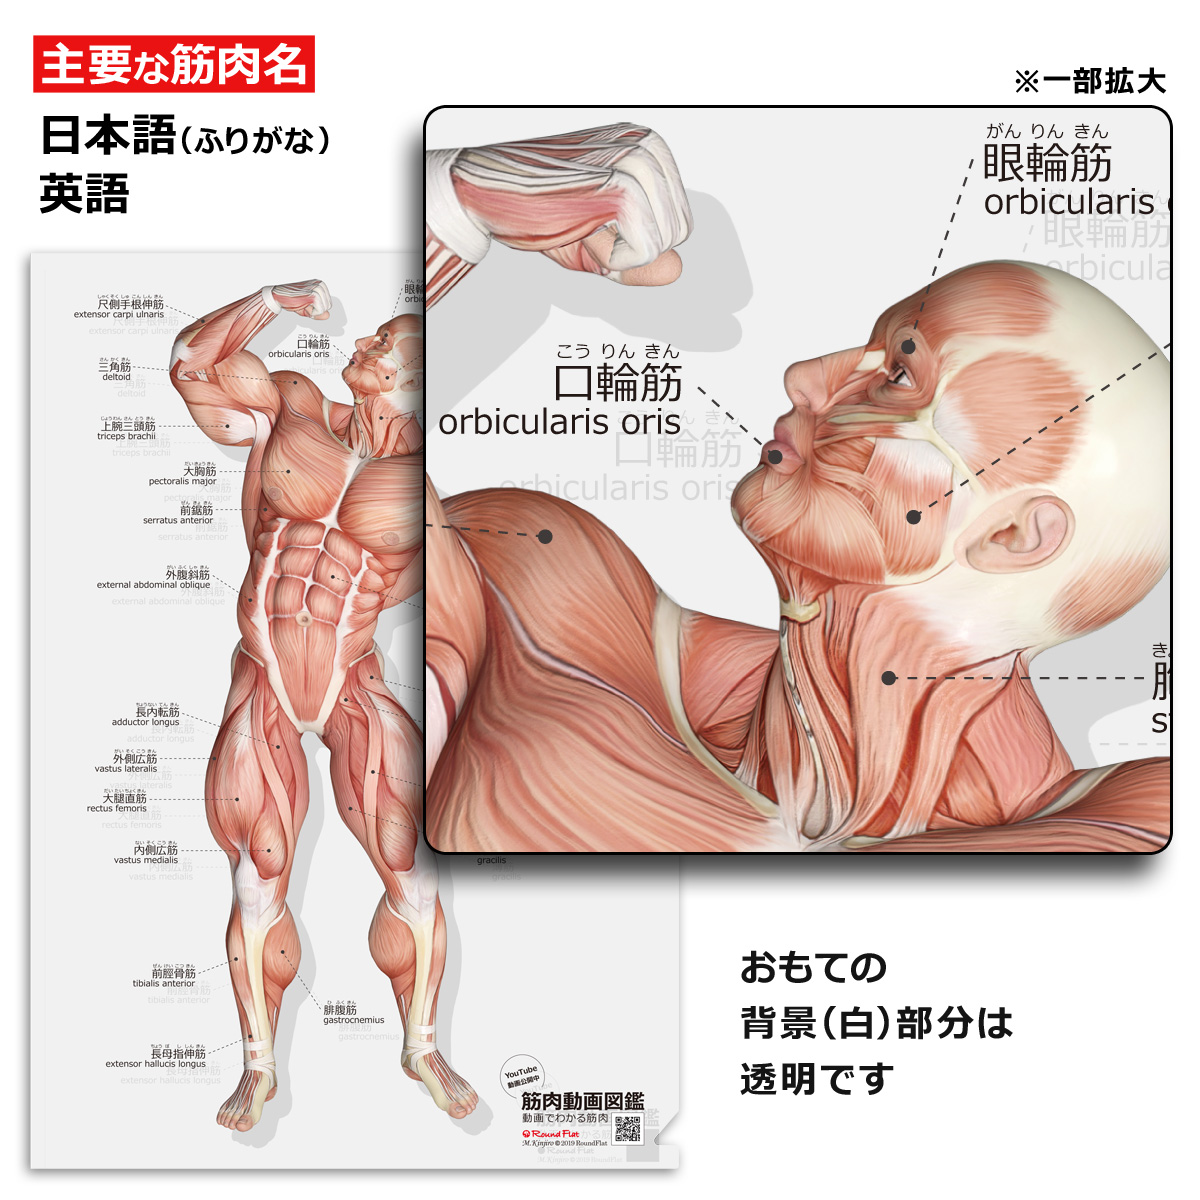 楽天市場 クリアファイル 筋肉 筋次郎の筋 クリアファイル サイズ 両面カラー 解剖学 名称 名前 送料無料 キャンペーン 筋肉家